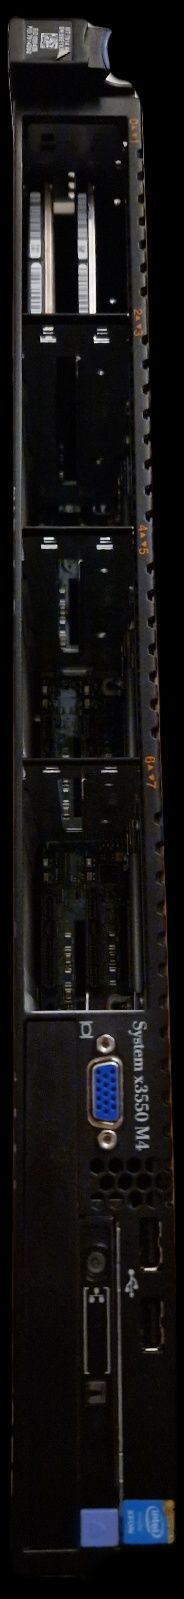 IBM x3550 M4 48Gb Ram 2x Intel Xeon E5-2630 v2, RAID, 2x 550W PSU